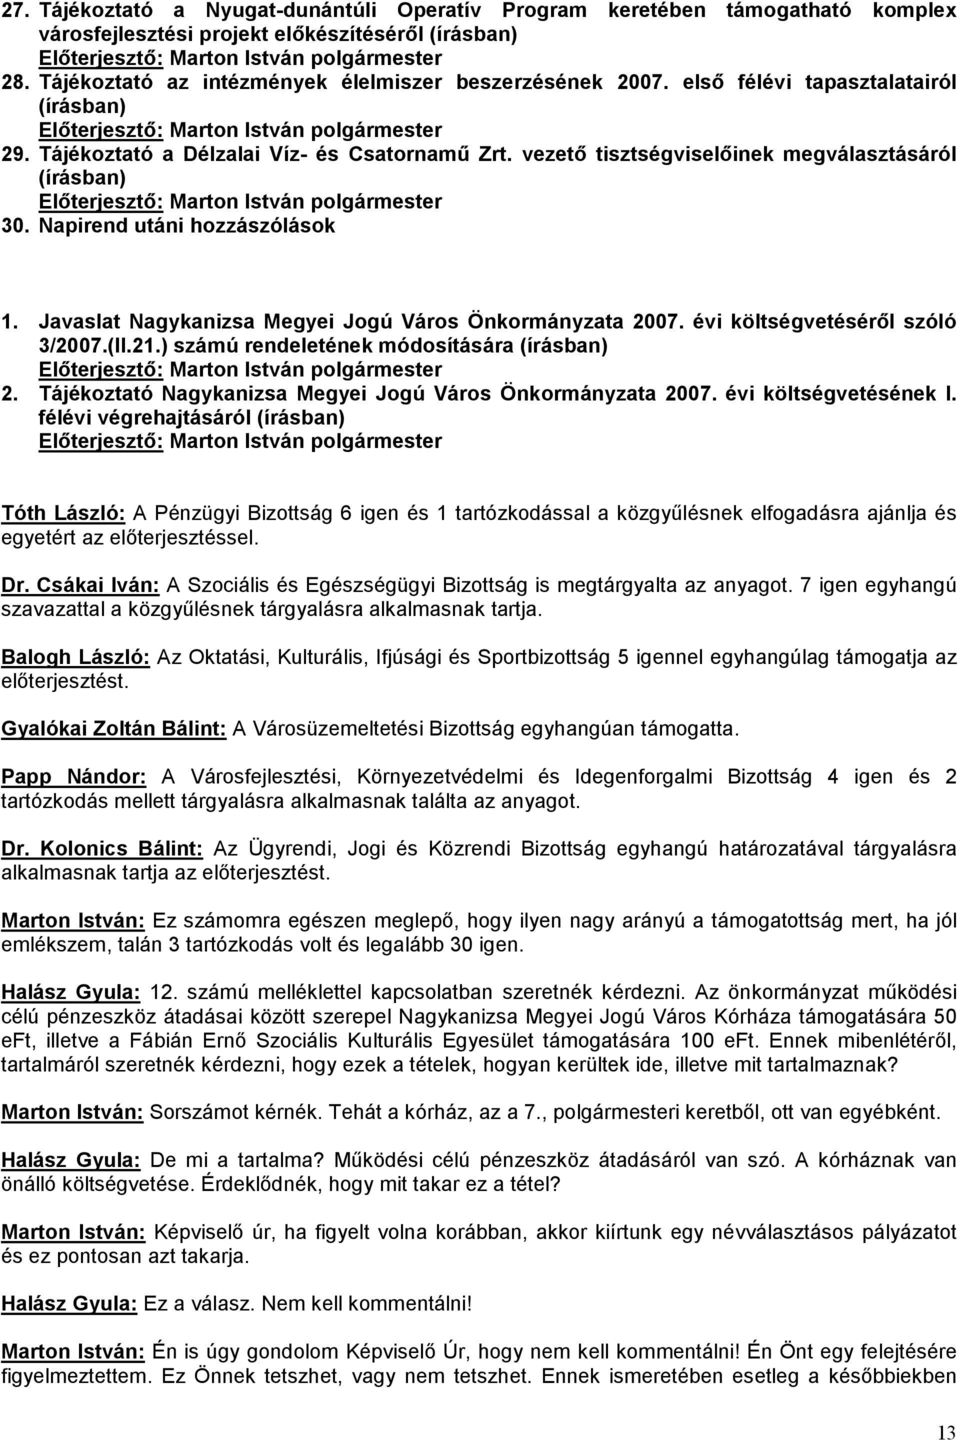 Javaslat Nagykanizsa Megyei Jogú Város Önkormányzata 2007. évi költségvetéséről szóló 3/2007.(II.21.) számú rendeletének módosítására (írásban) 2.